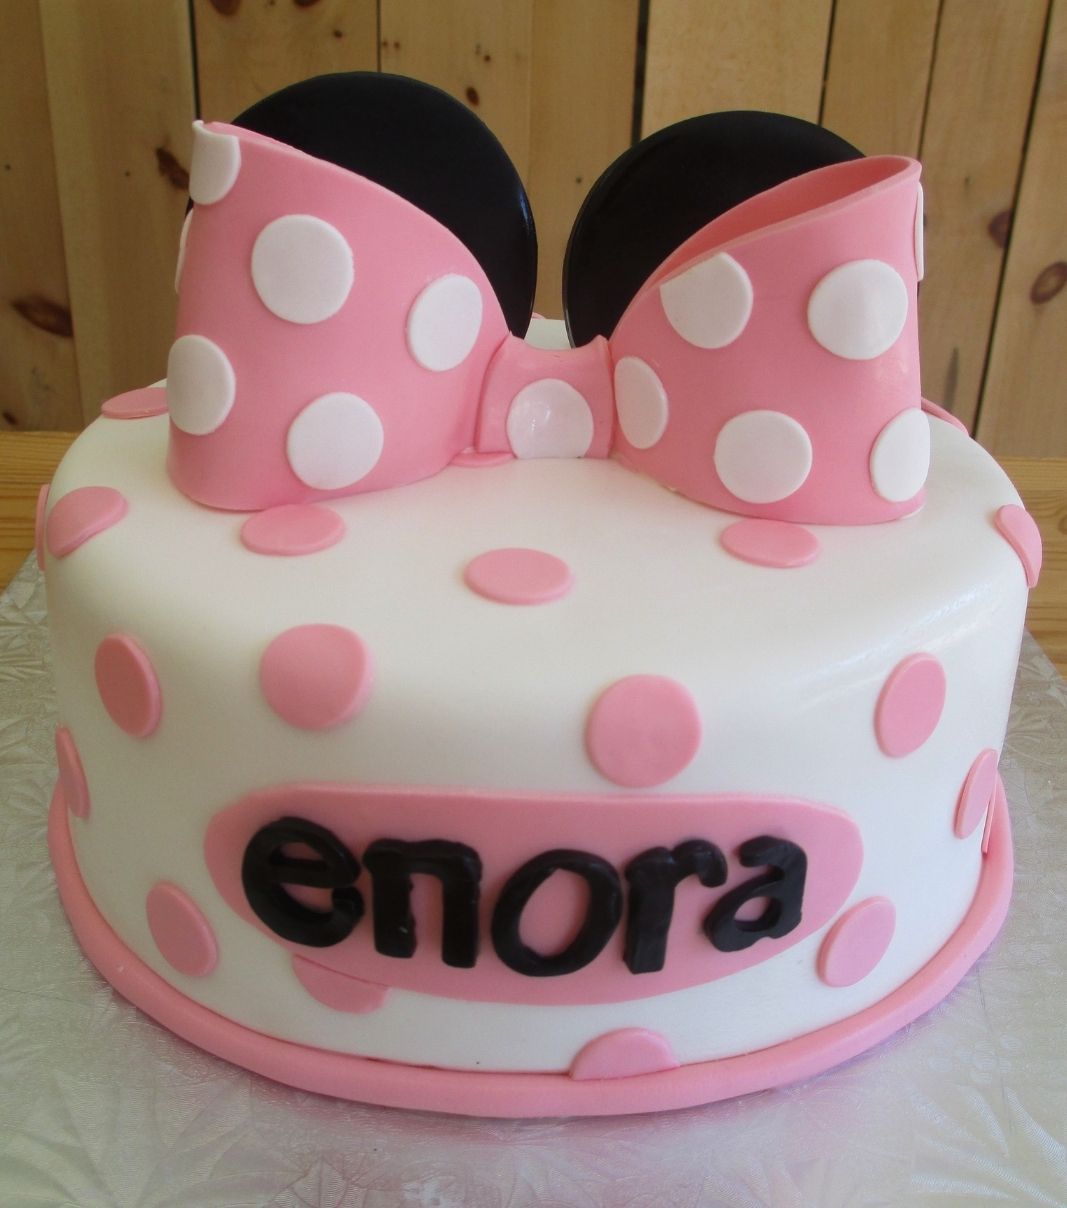 Gâteau d'anniversaire sur mesure d'Enora: gâteau à thématique Minnie Mouse avec une couverture en fondant blanc et rose et décoré d'oreilles noires et d'une boucle rose à pois blancs en fondant.